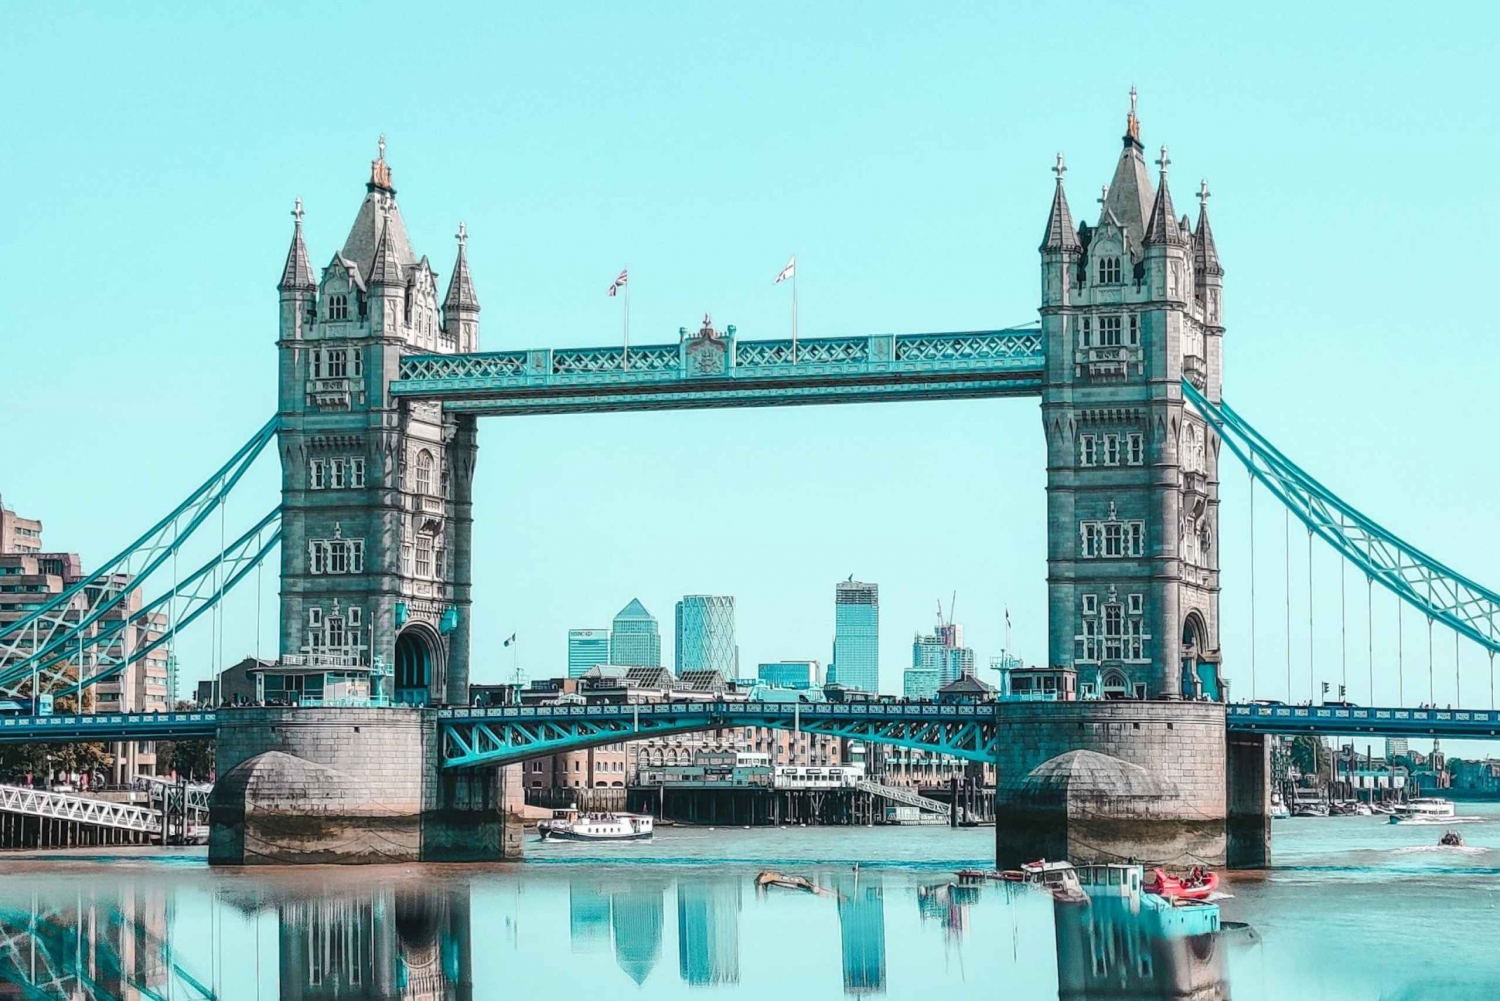 London : Digital audioguide for Tower bridge